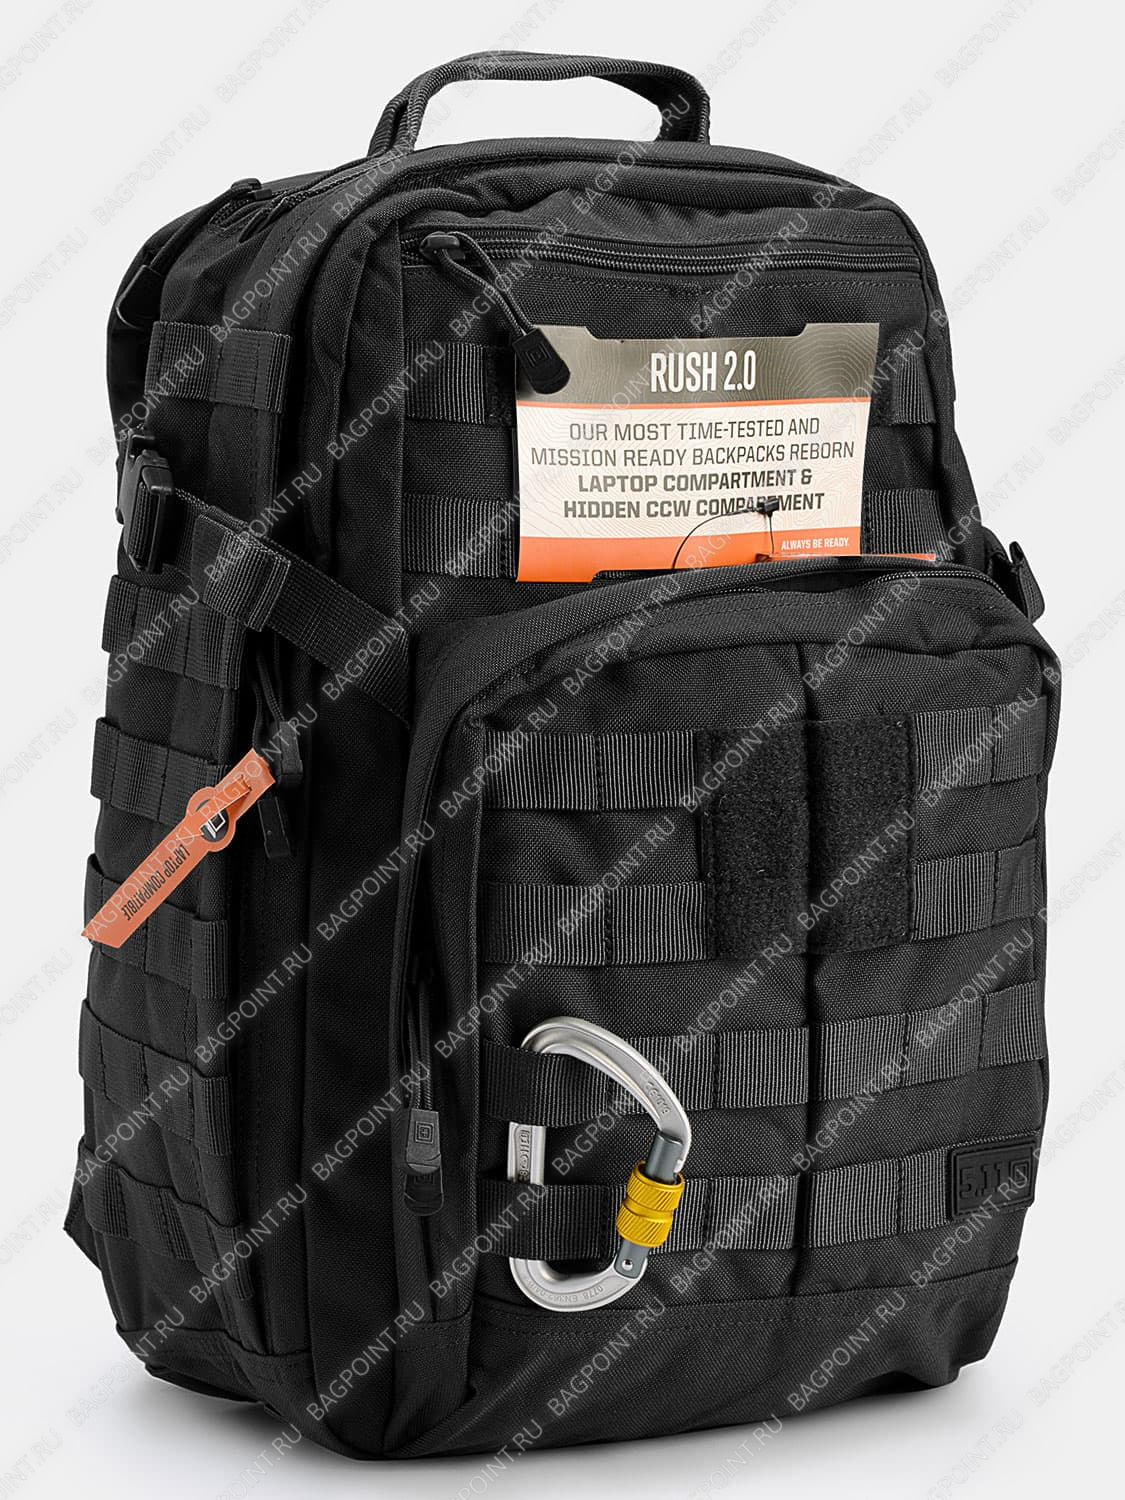 Выкройка кожаная сумка в стиле армейского вещь мешка армии США ( Military Bag Army USA)